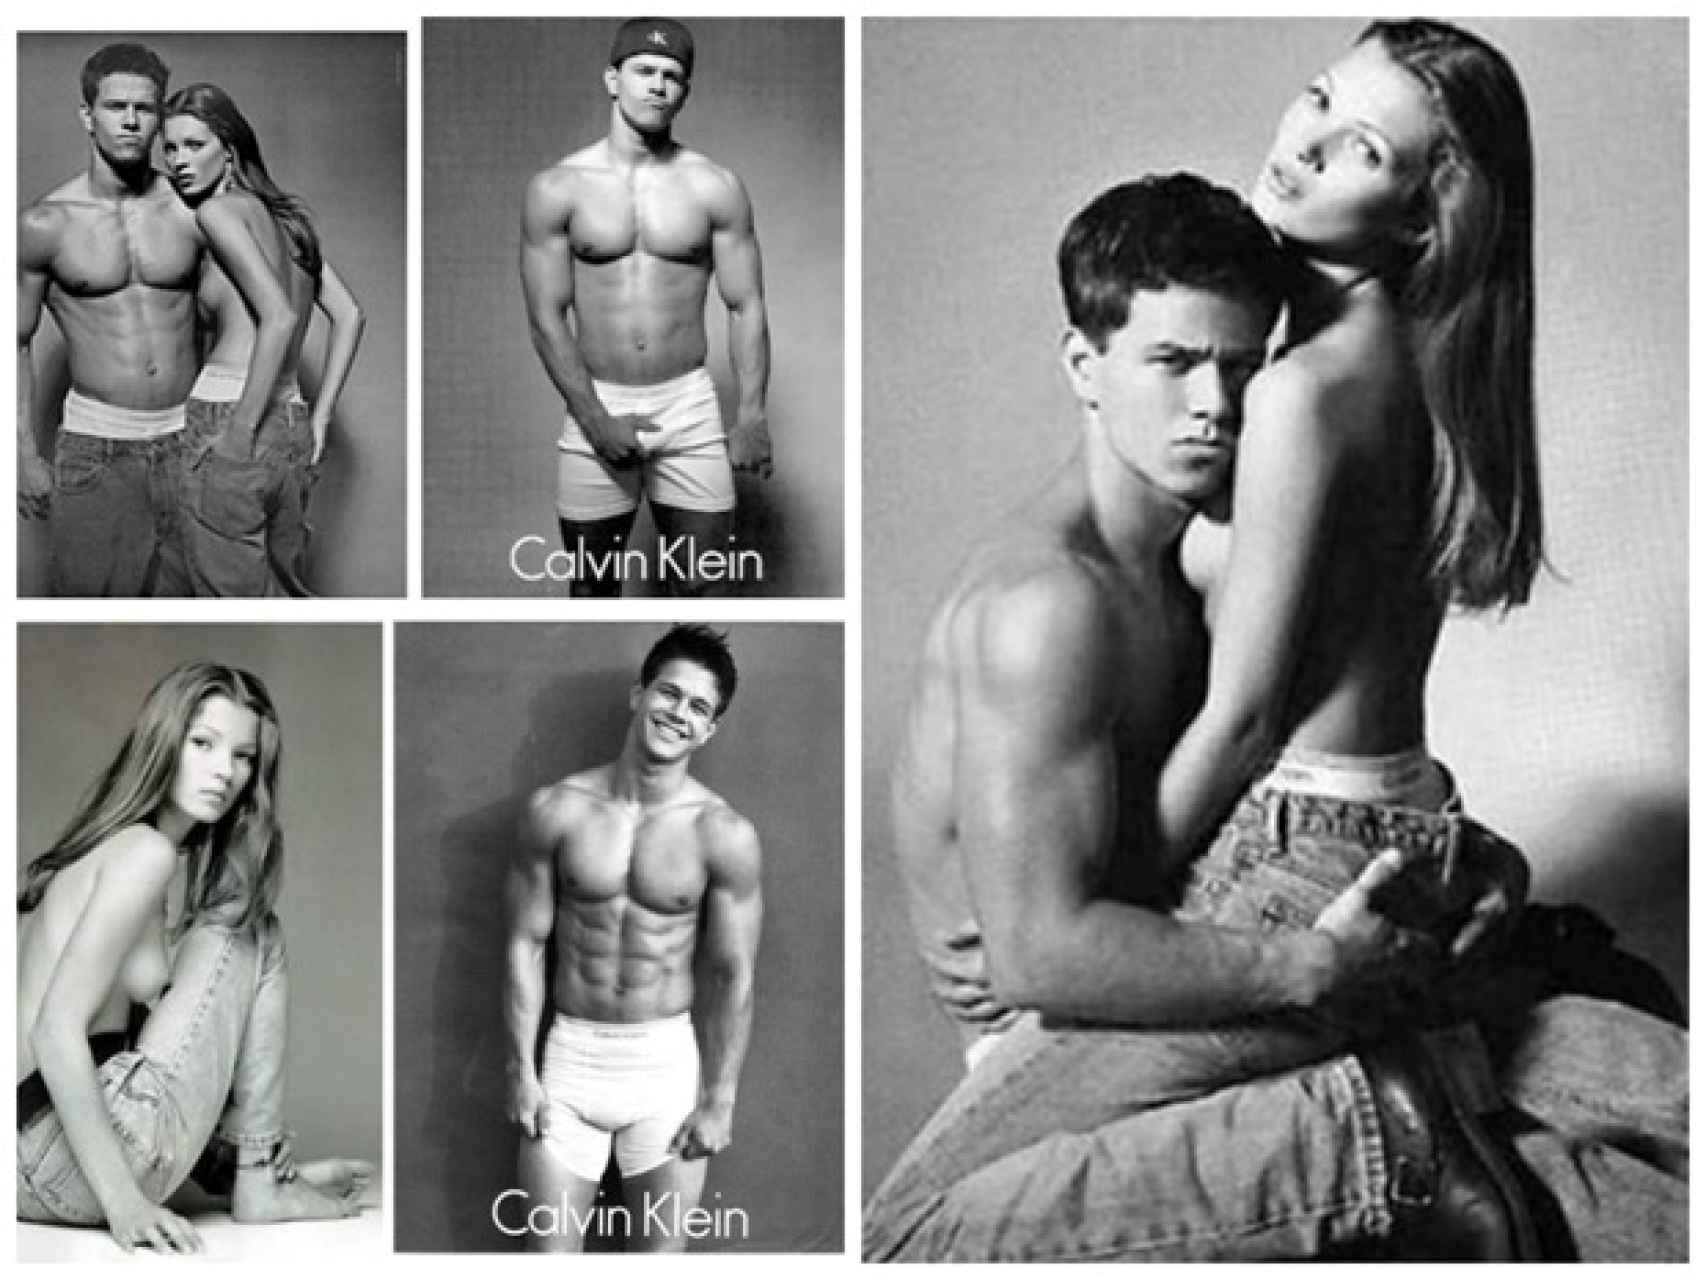 La campaña de Calvin Klein que protagonizaron Kate Moss y Mark Wahlberg en 1992